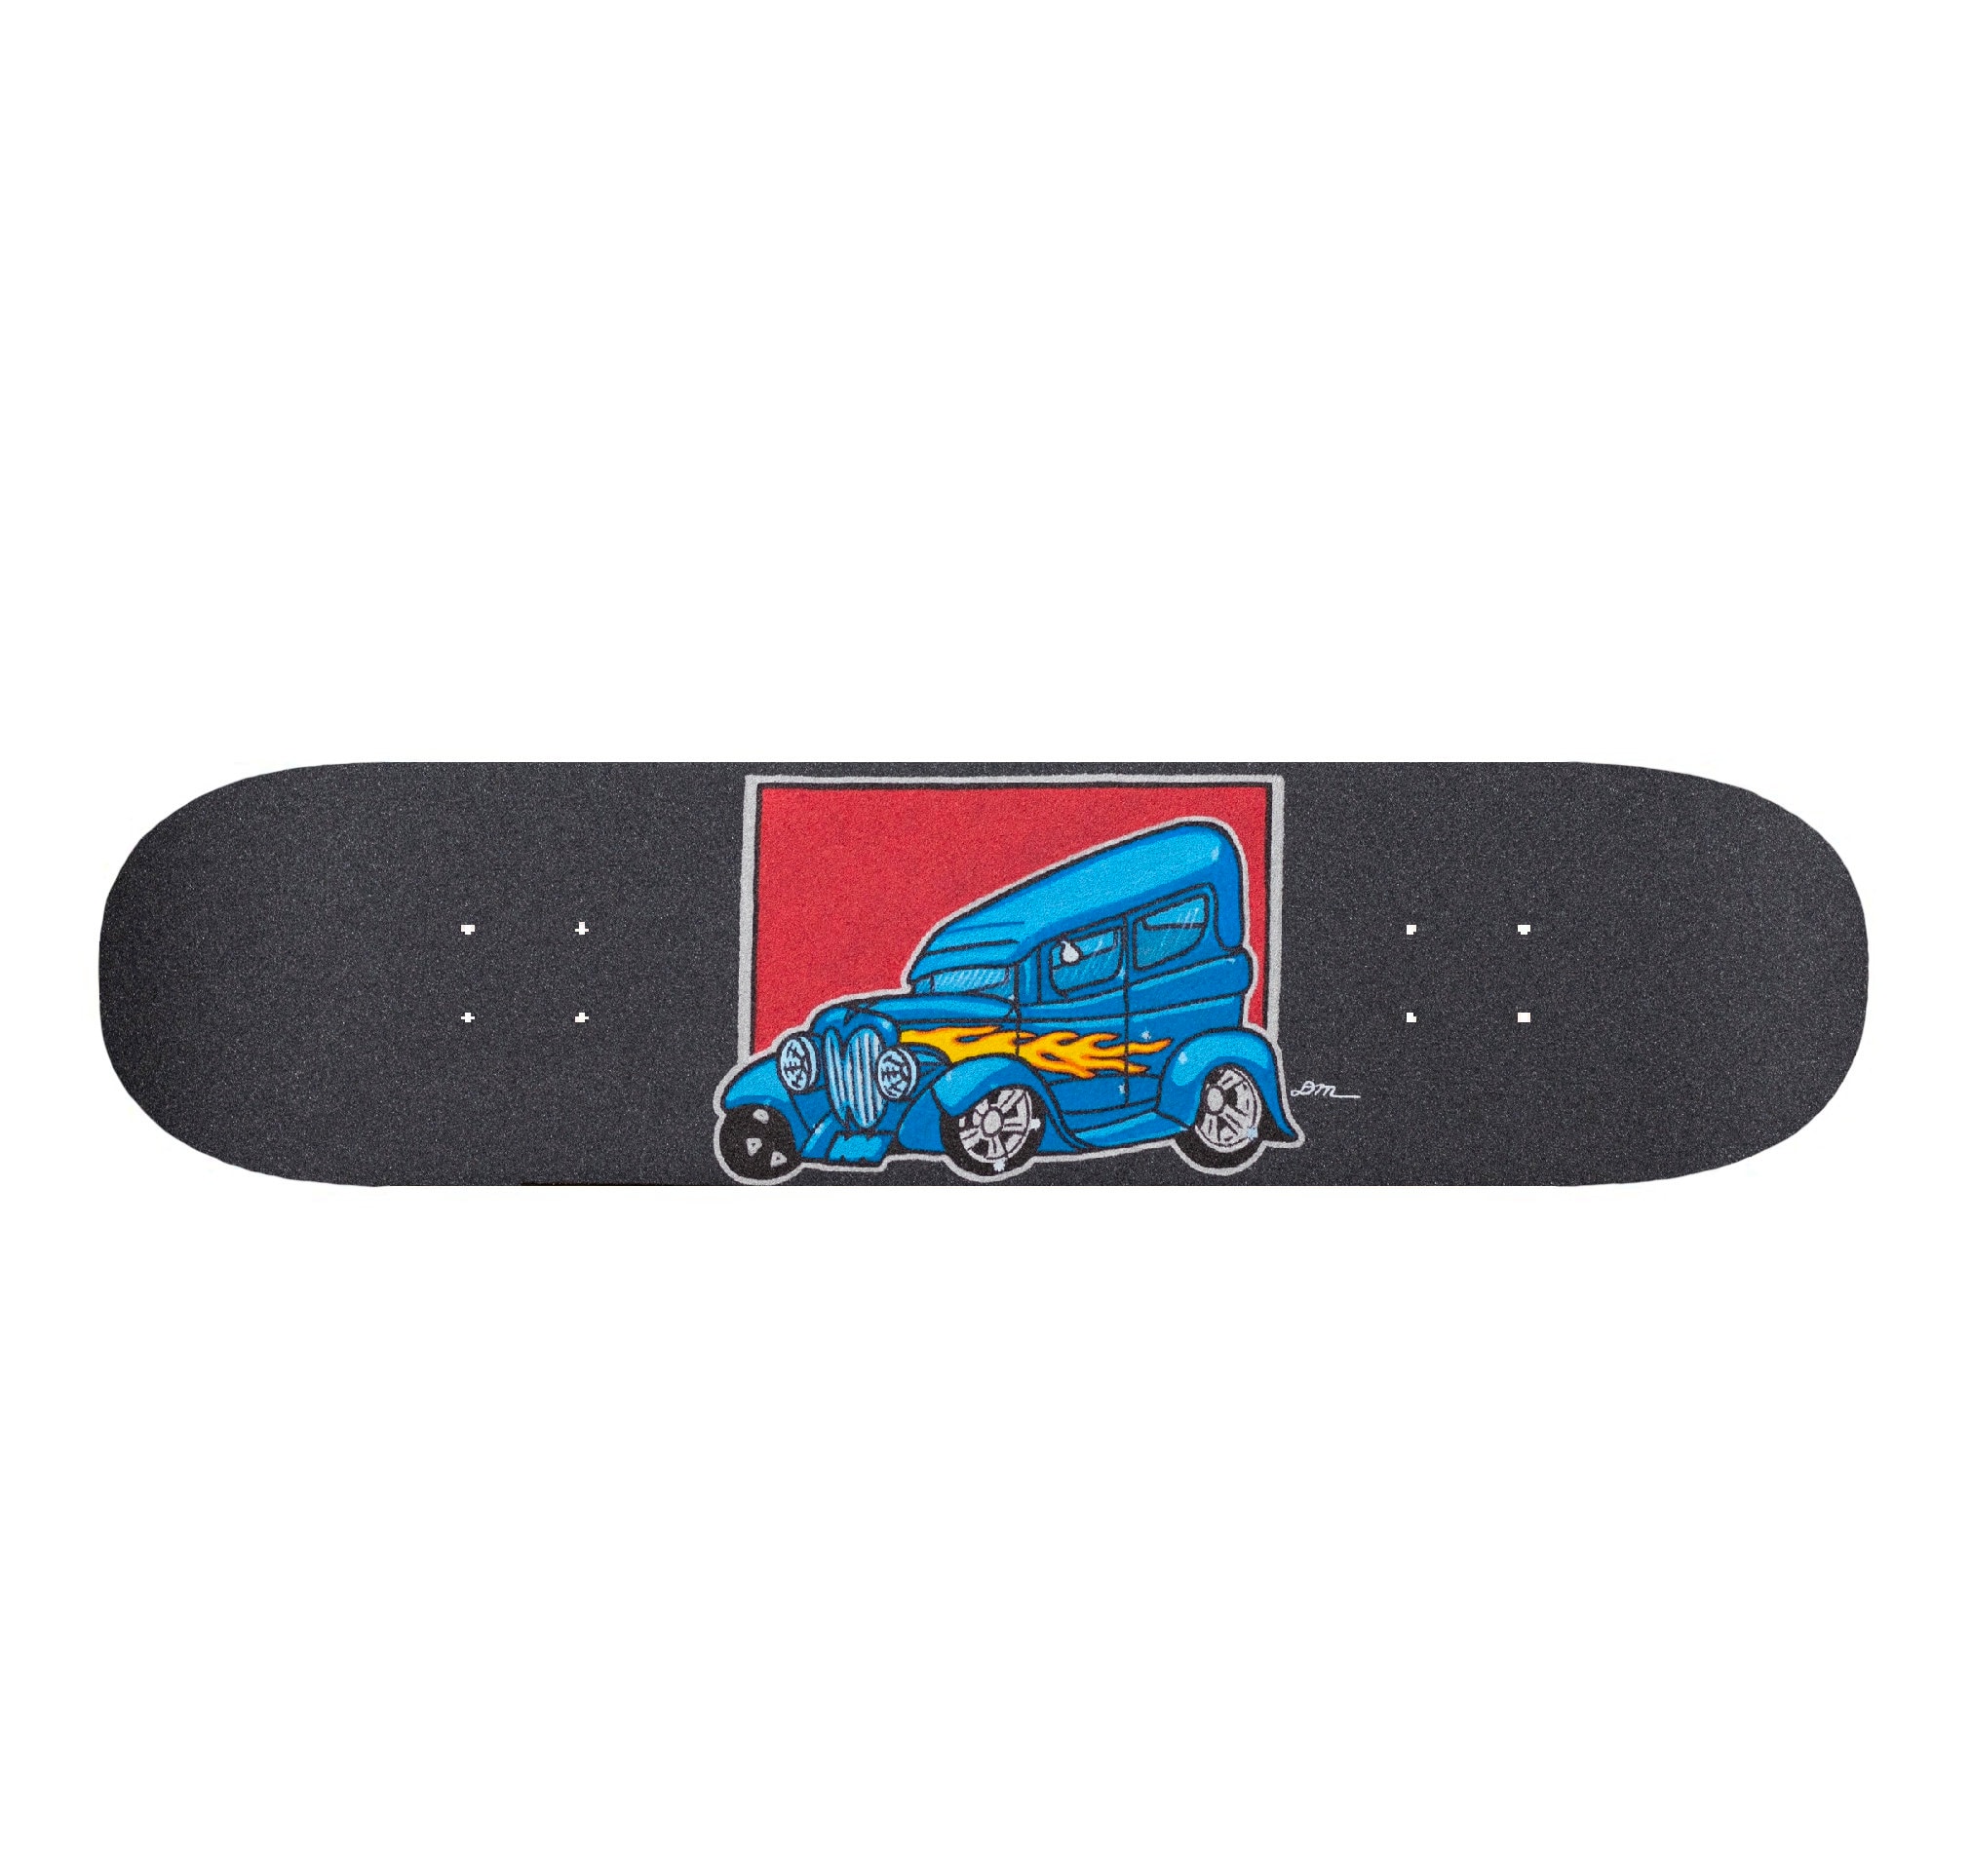 Buy Griptape Skateboard Grip Tape Gripart Griptape Art Custom Skateboard  Art Online in India 